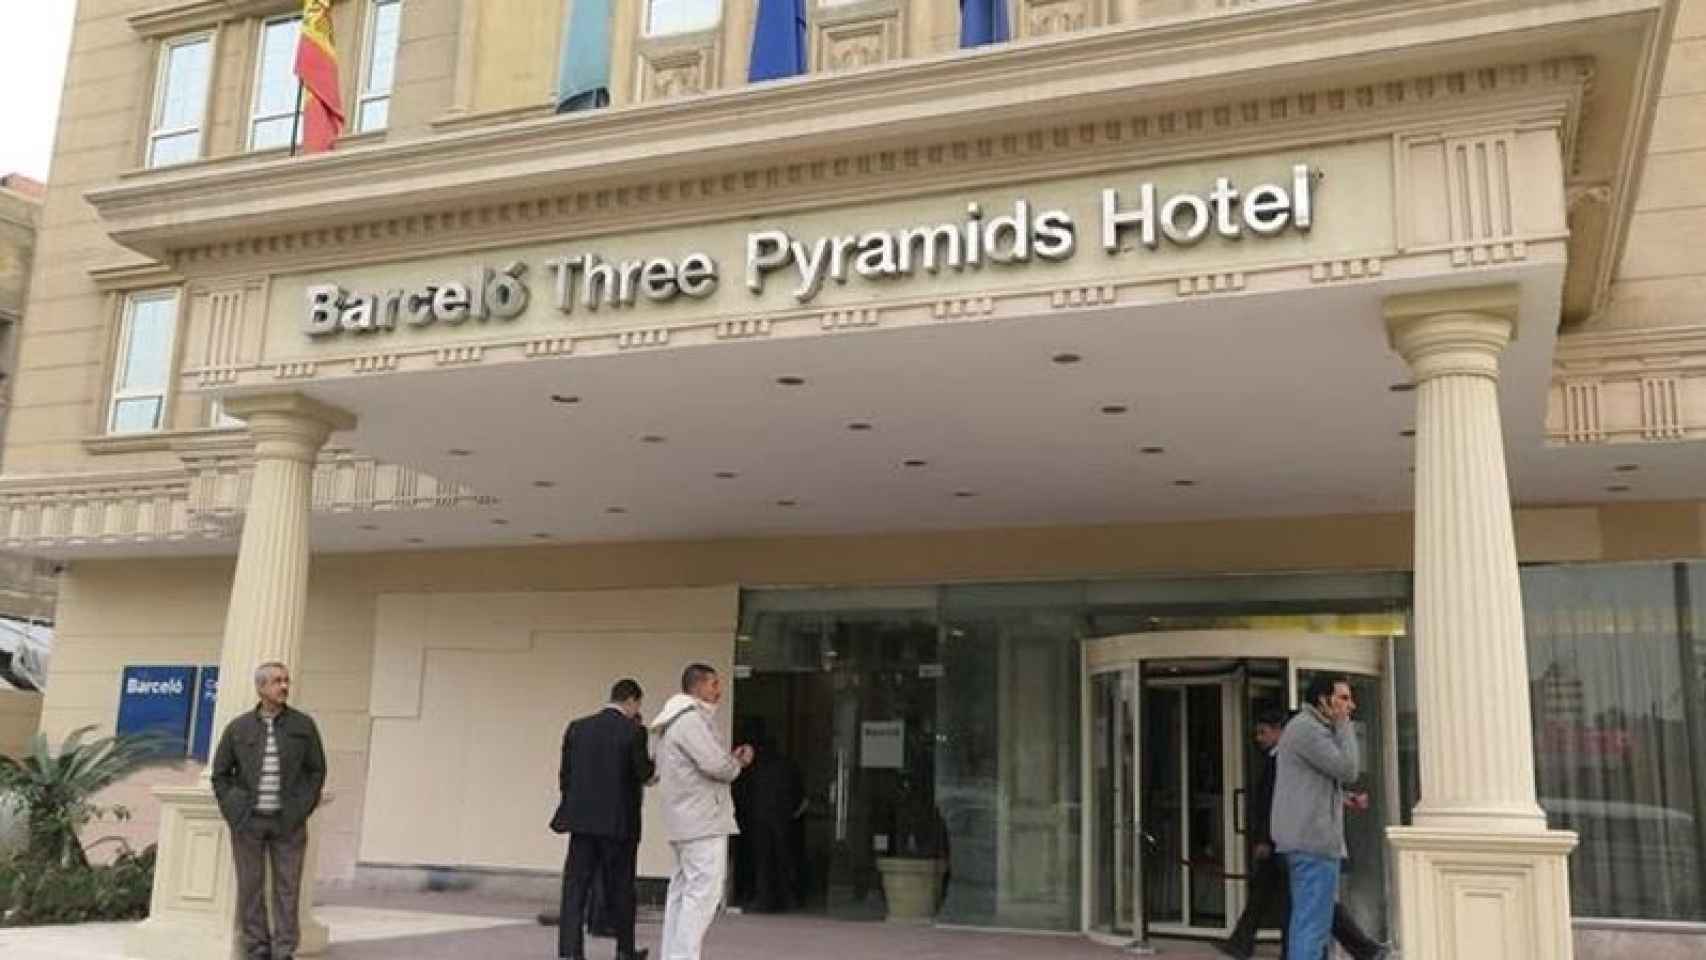 Hotel Barceló Pyramids en las Islas Baleares es una de las empresas que ha participado en el informe.